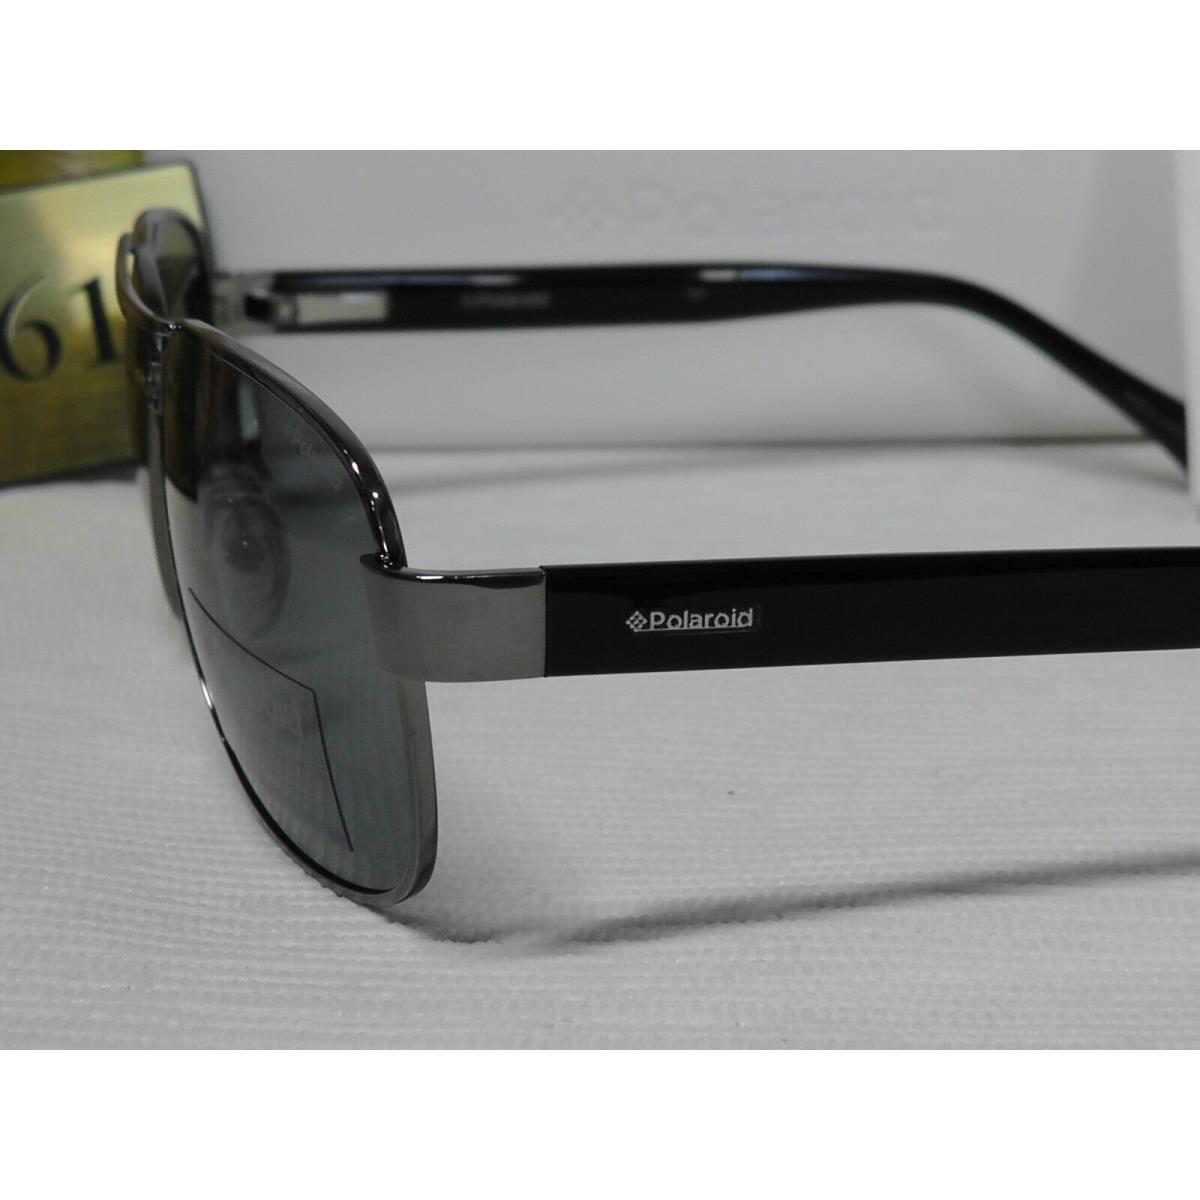 Polaroid sunglasses Aviator - Black/Ruthenium Frame, Gray Lens 2